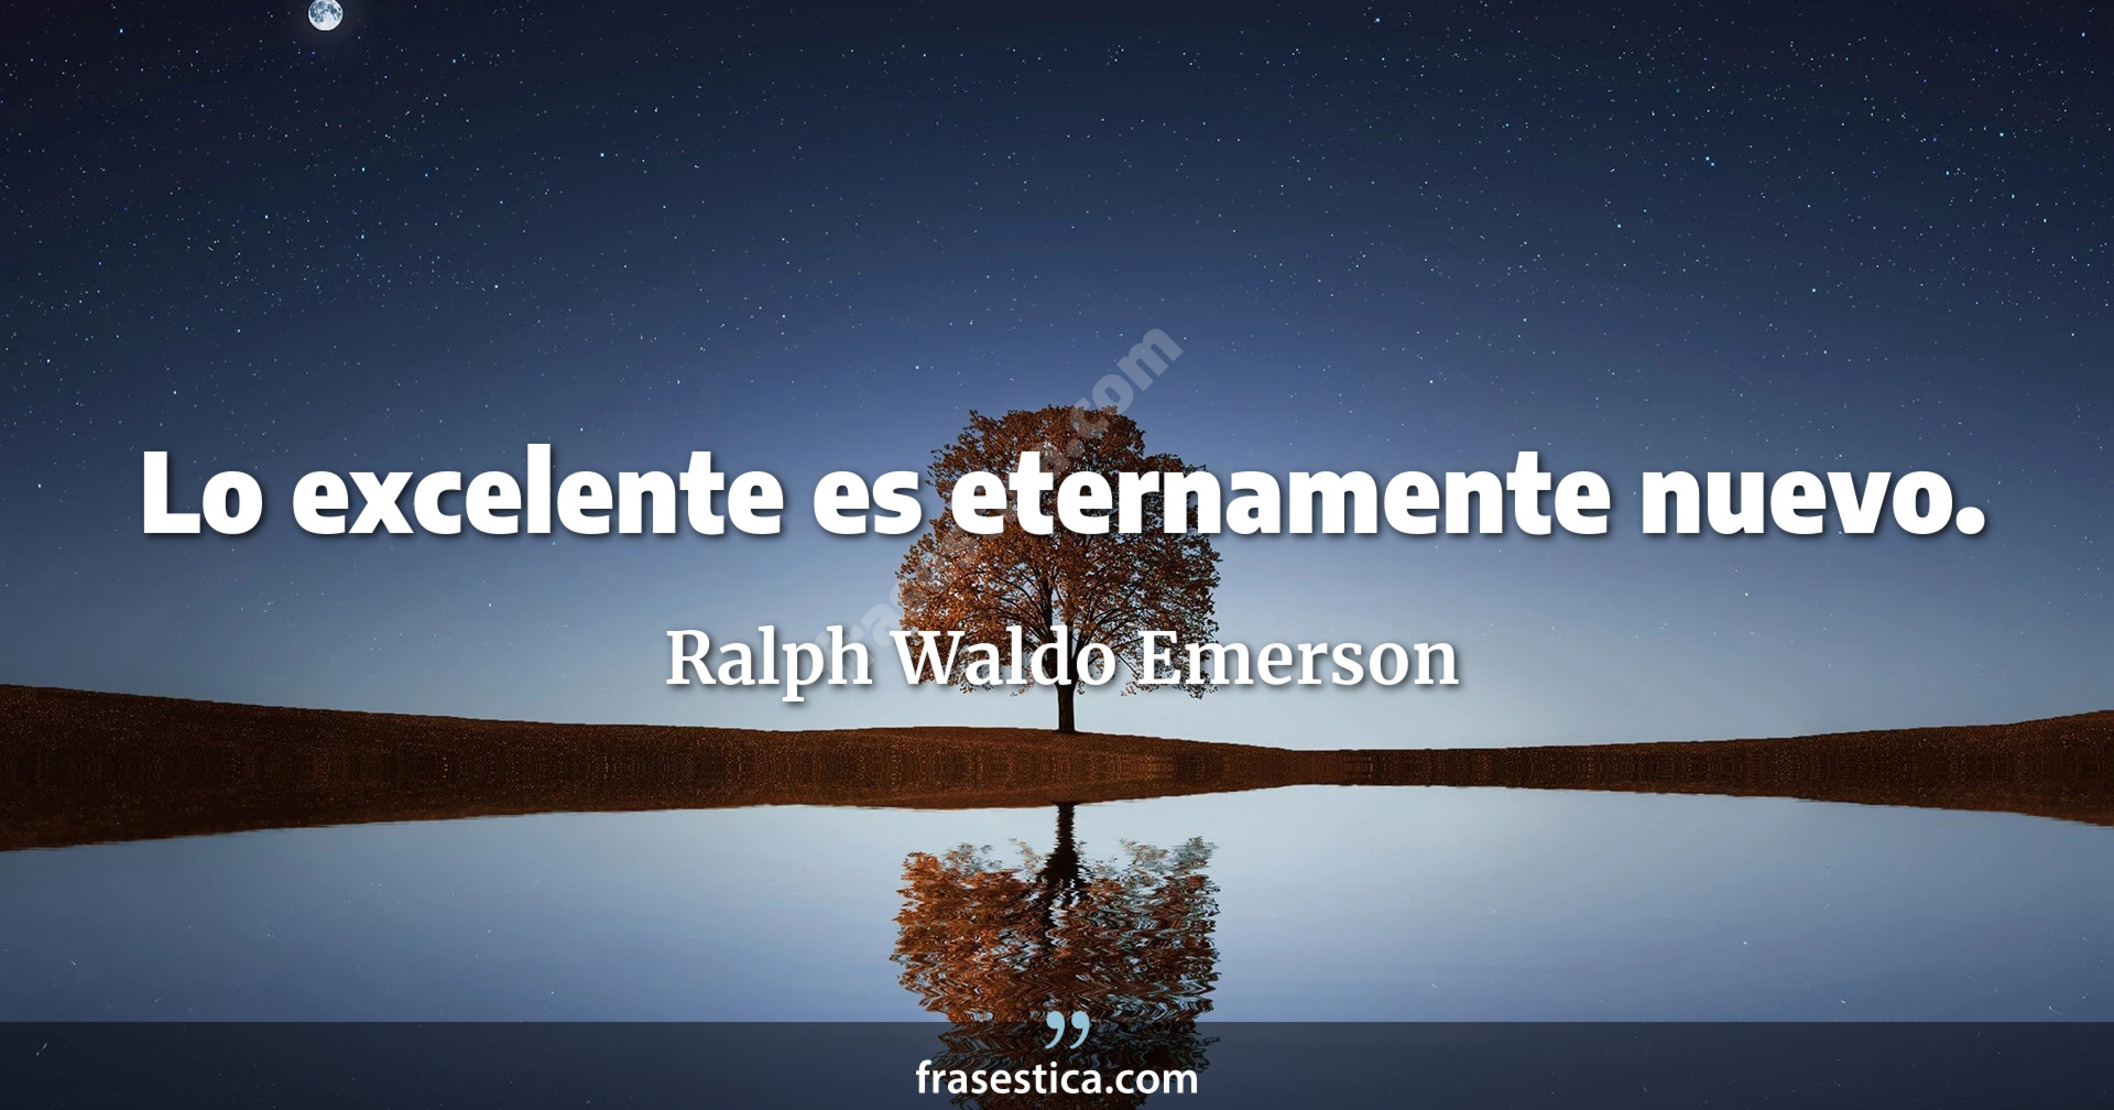 Lo excelente es eternamente nuevo. - Ralph Waldo Emerson